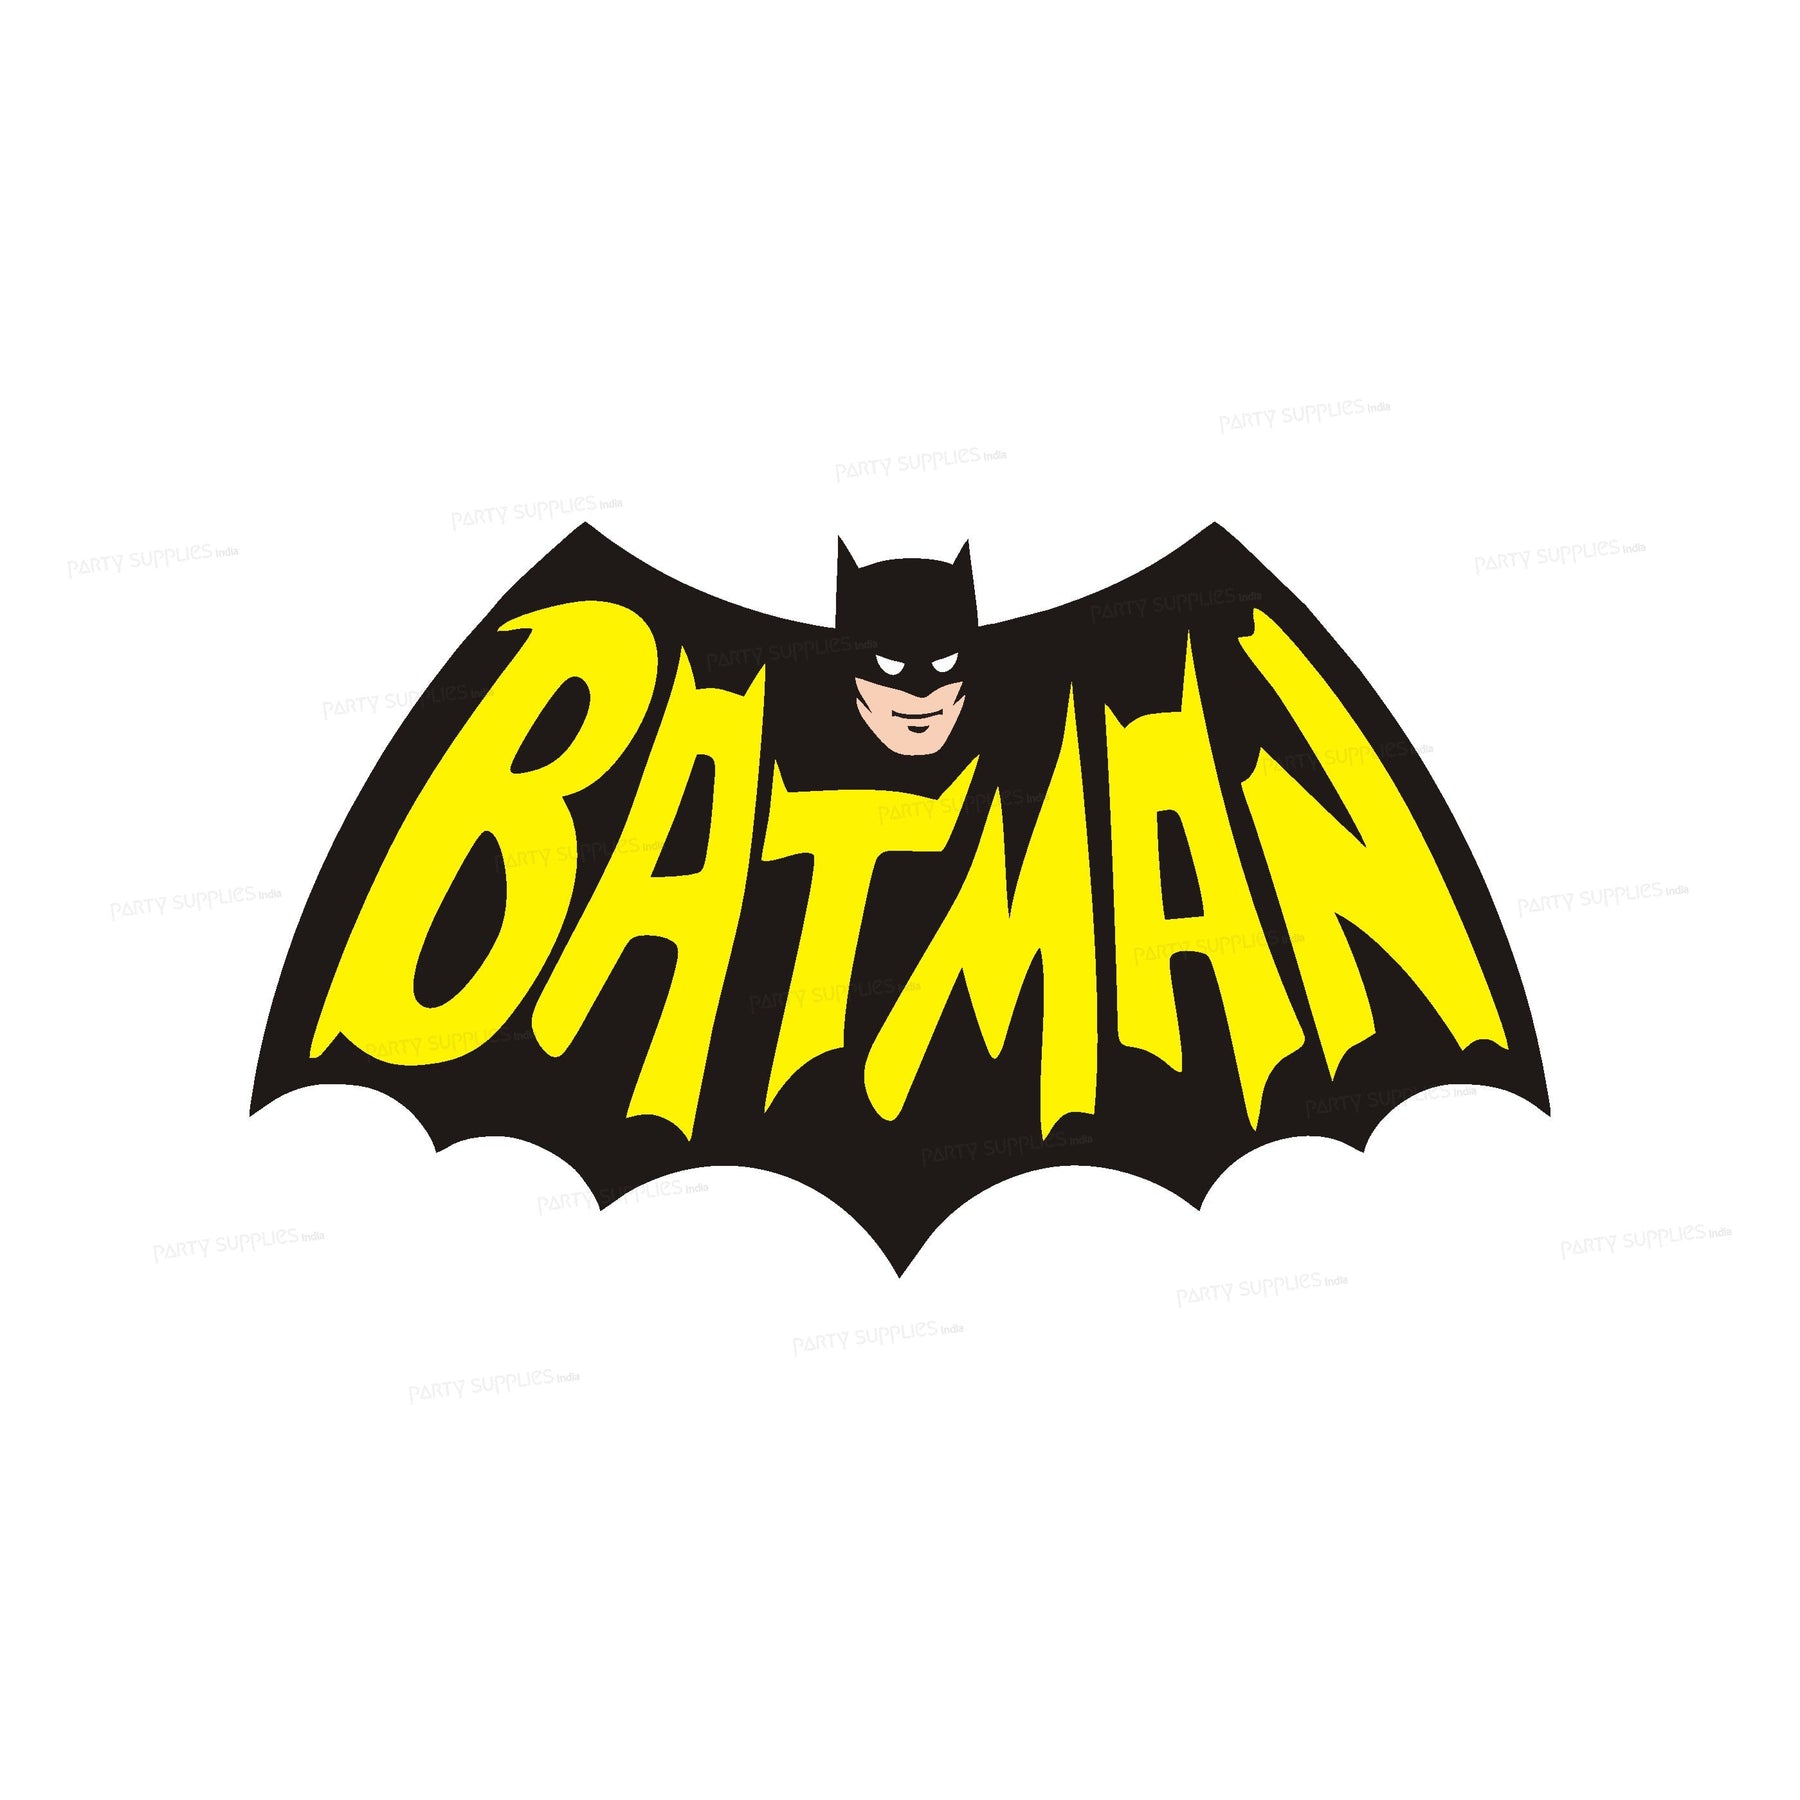 PSI Batman Theme Cutout - 15